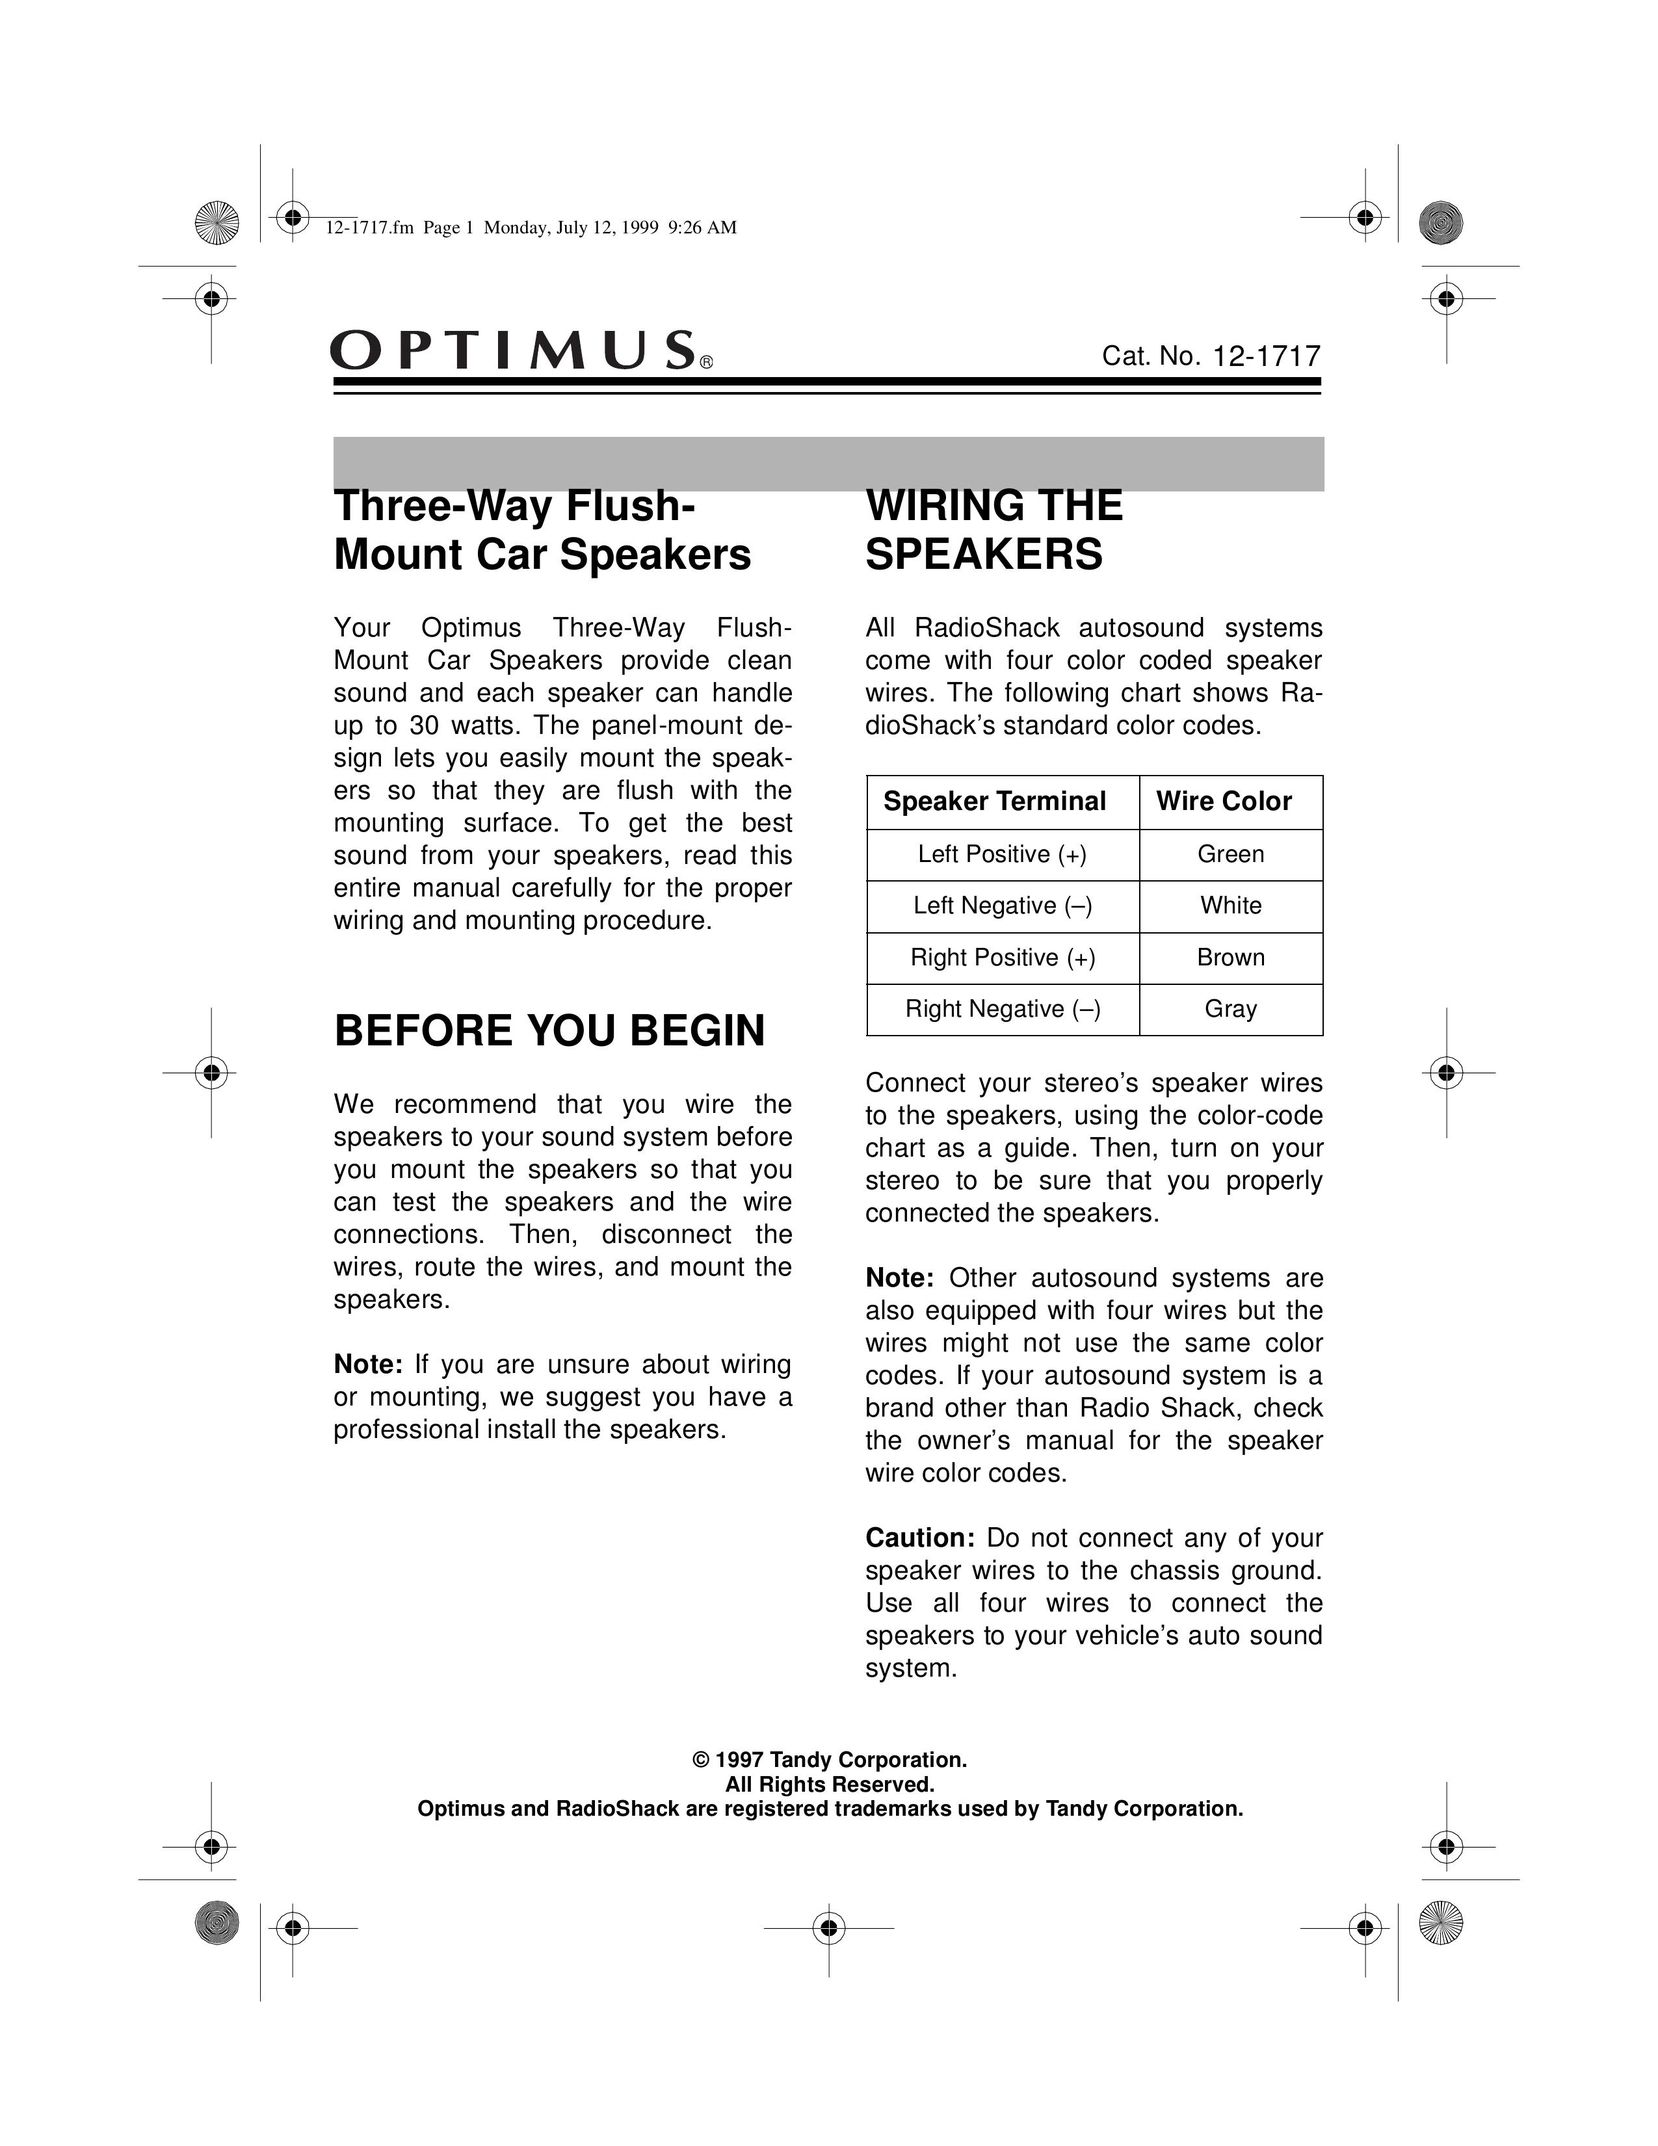 Optimus 12-1717 Car Speaker User Manual